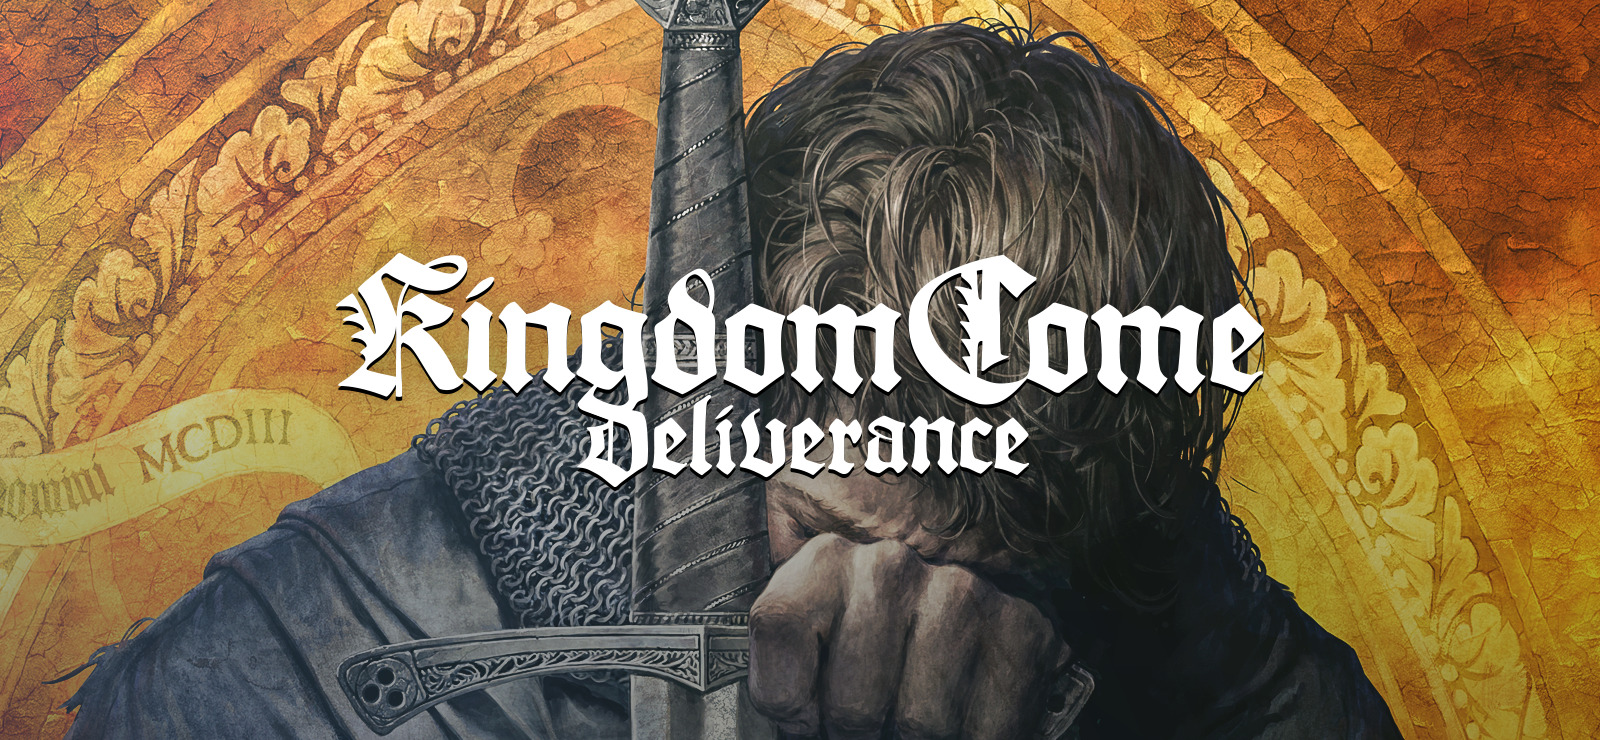 kingdom come deliverance cheats still work gamefaqs